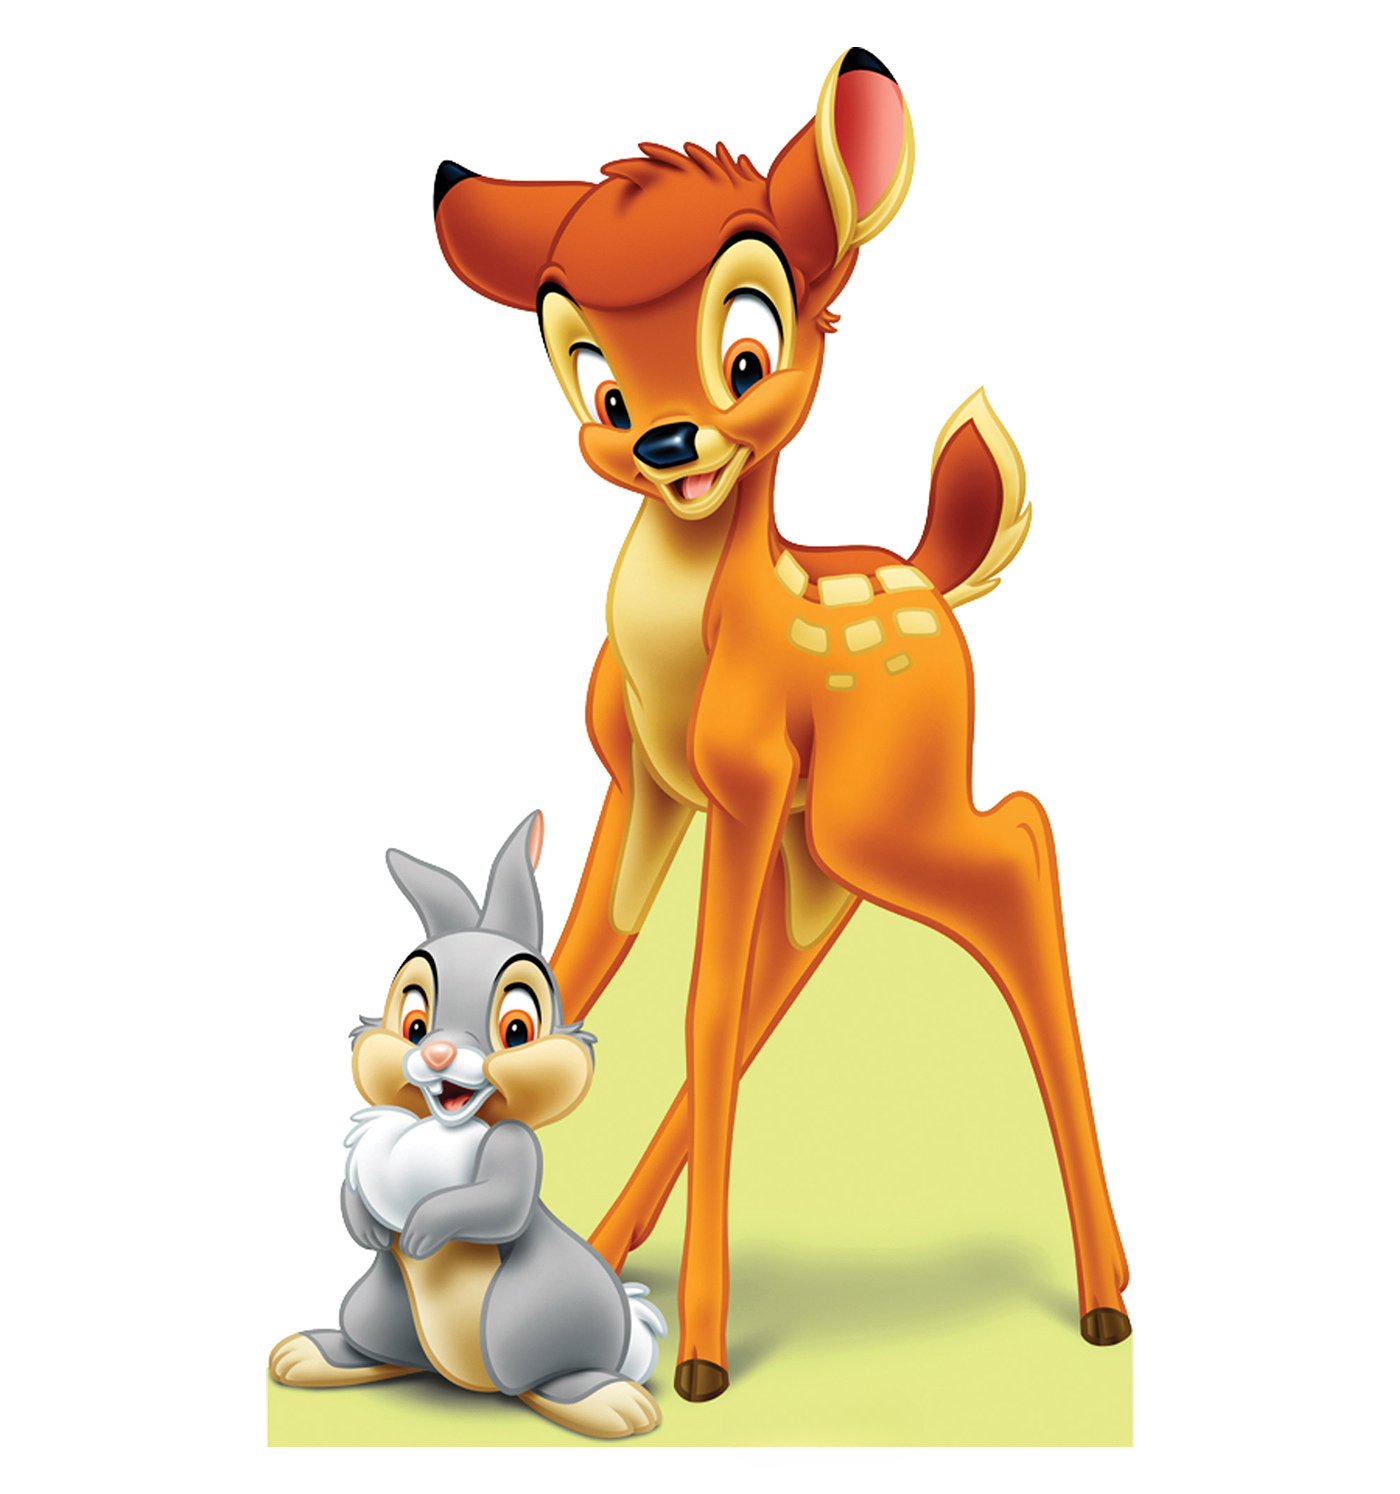 Elclásico De Disney, Bambi, Continúa Trayendo Sonrisas A Generaciones De Espectadores.